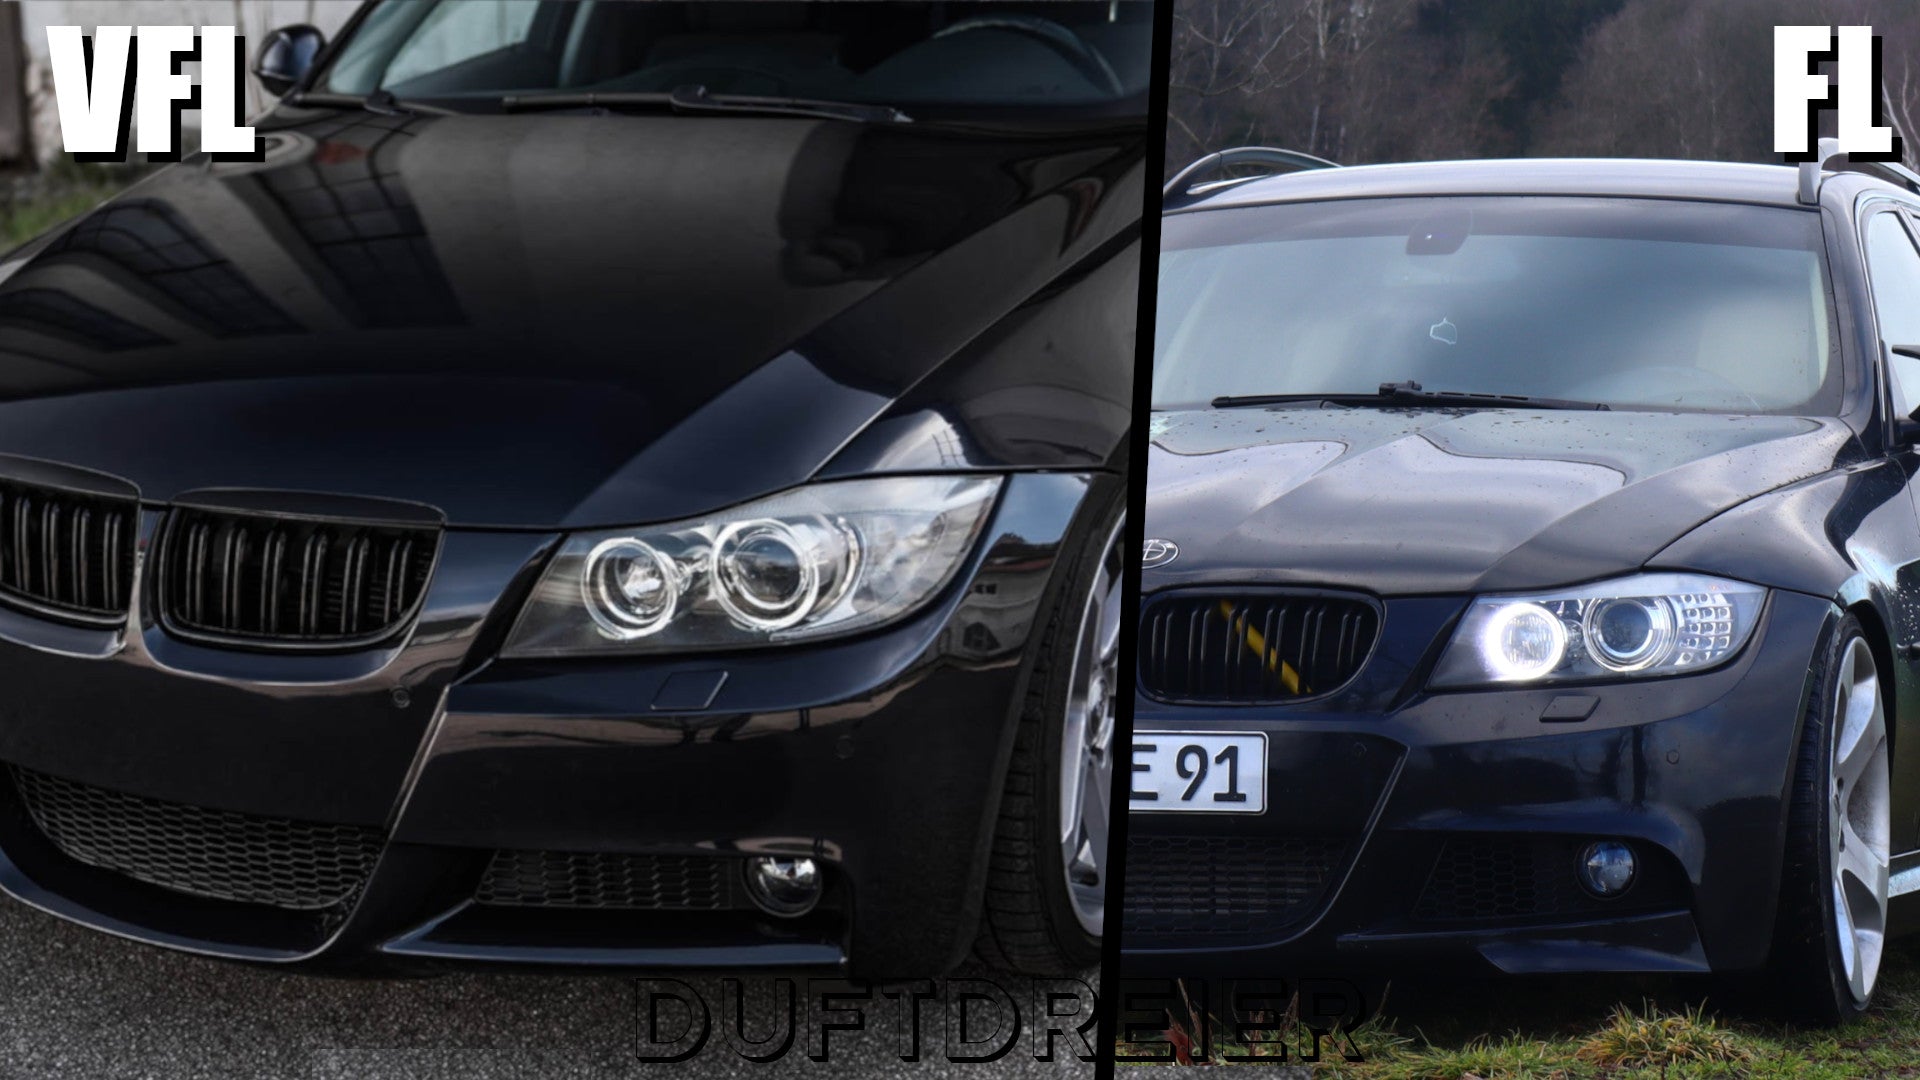 Vergleich VFL und LCI BMW e90 und e91